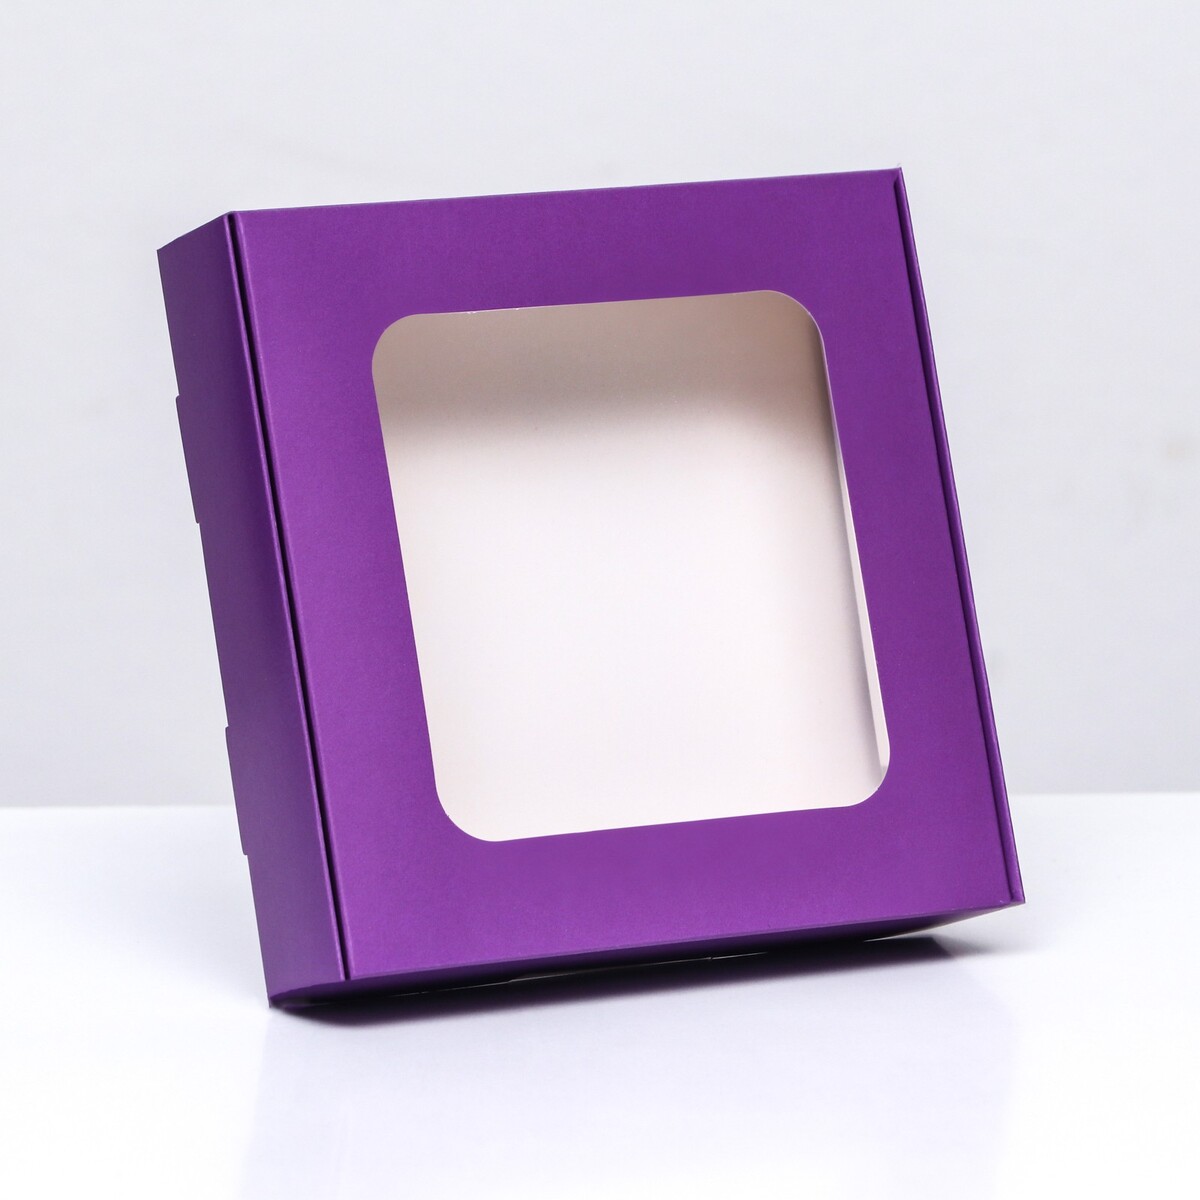 Коробка самосборная с окном сиреневая, 13 х 13 х 3 см коробка самосборная с окном сиреневая 13 х 13 х 3 см